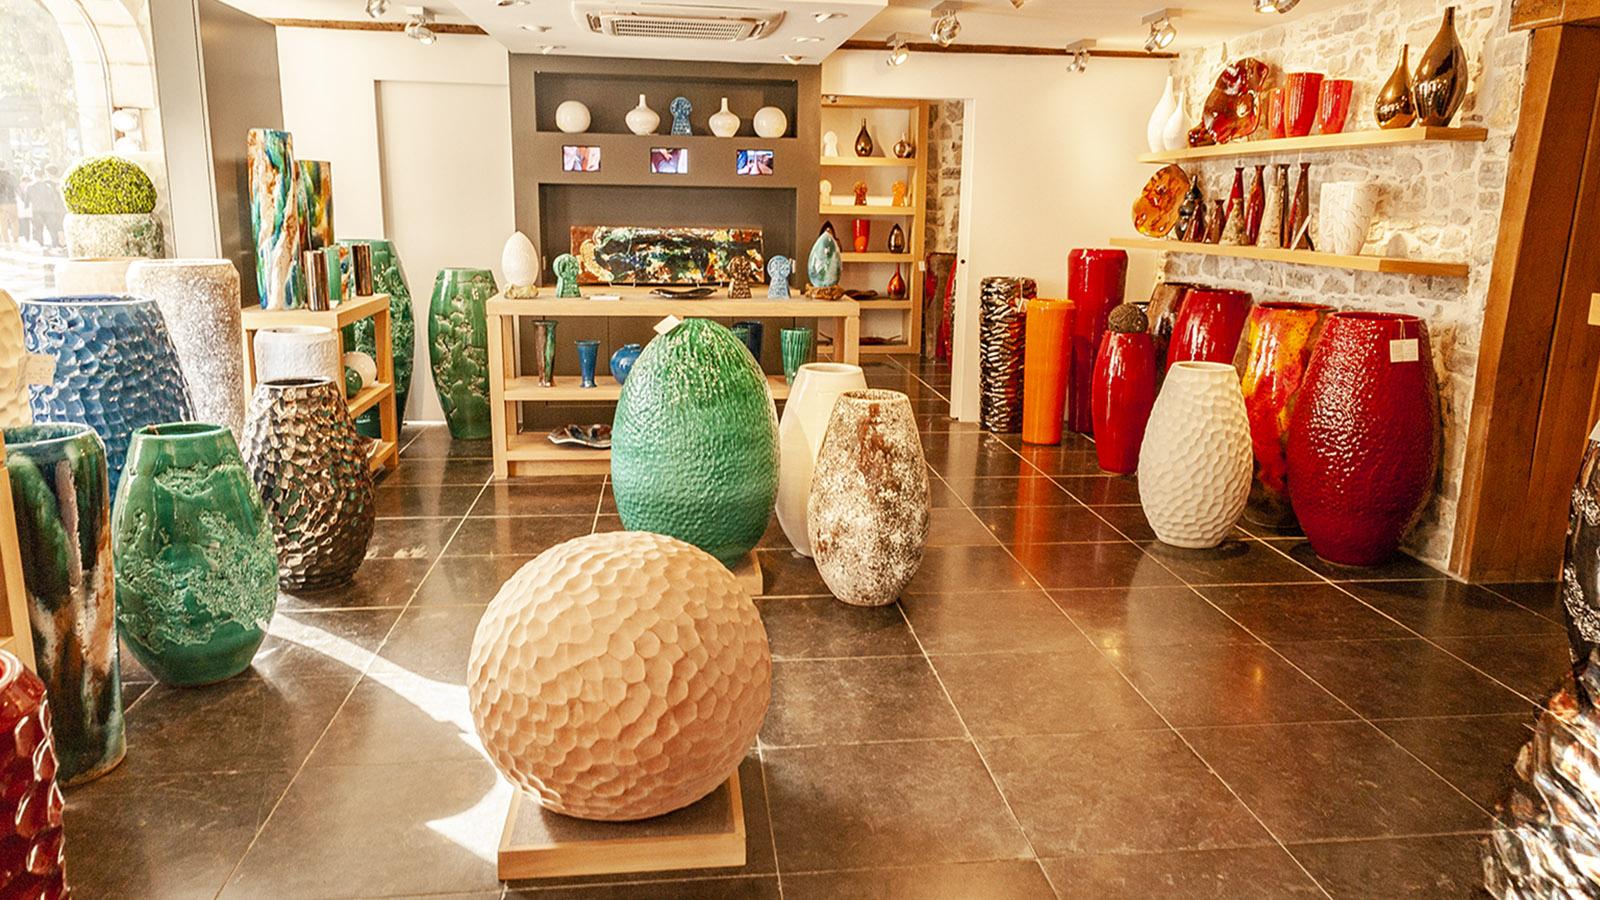 Saint-Jean-de-Luz: Giantisch - die Keramiken von Goicoechea